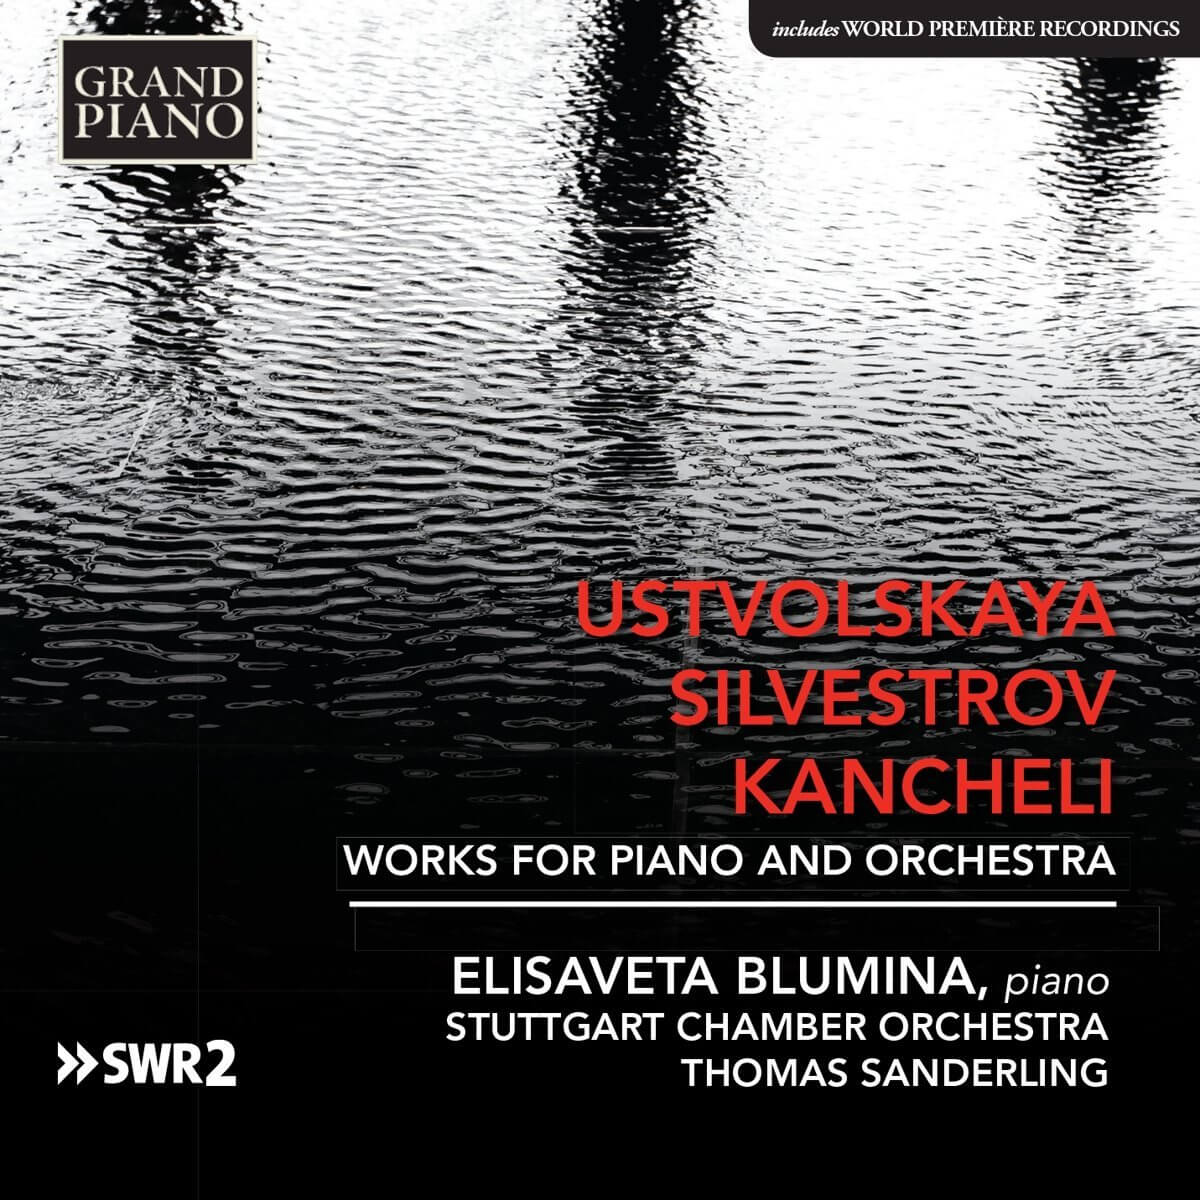 Ustvolskaya, Silvestrov & Kancheli: Works for Piano & Orchestra | Elisaveta Blumina, Giya Kancheli, Thomas Sanderling (Conductor), Stuttgart Chamber Orchestra (Orchestra) 